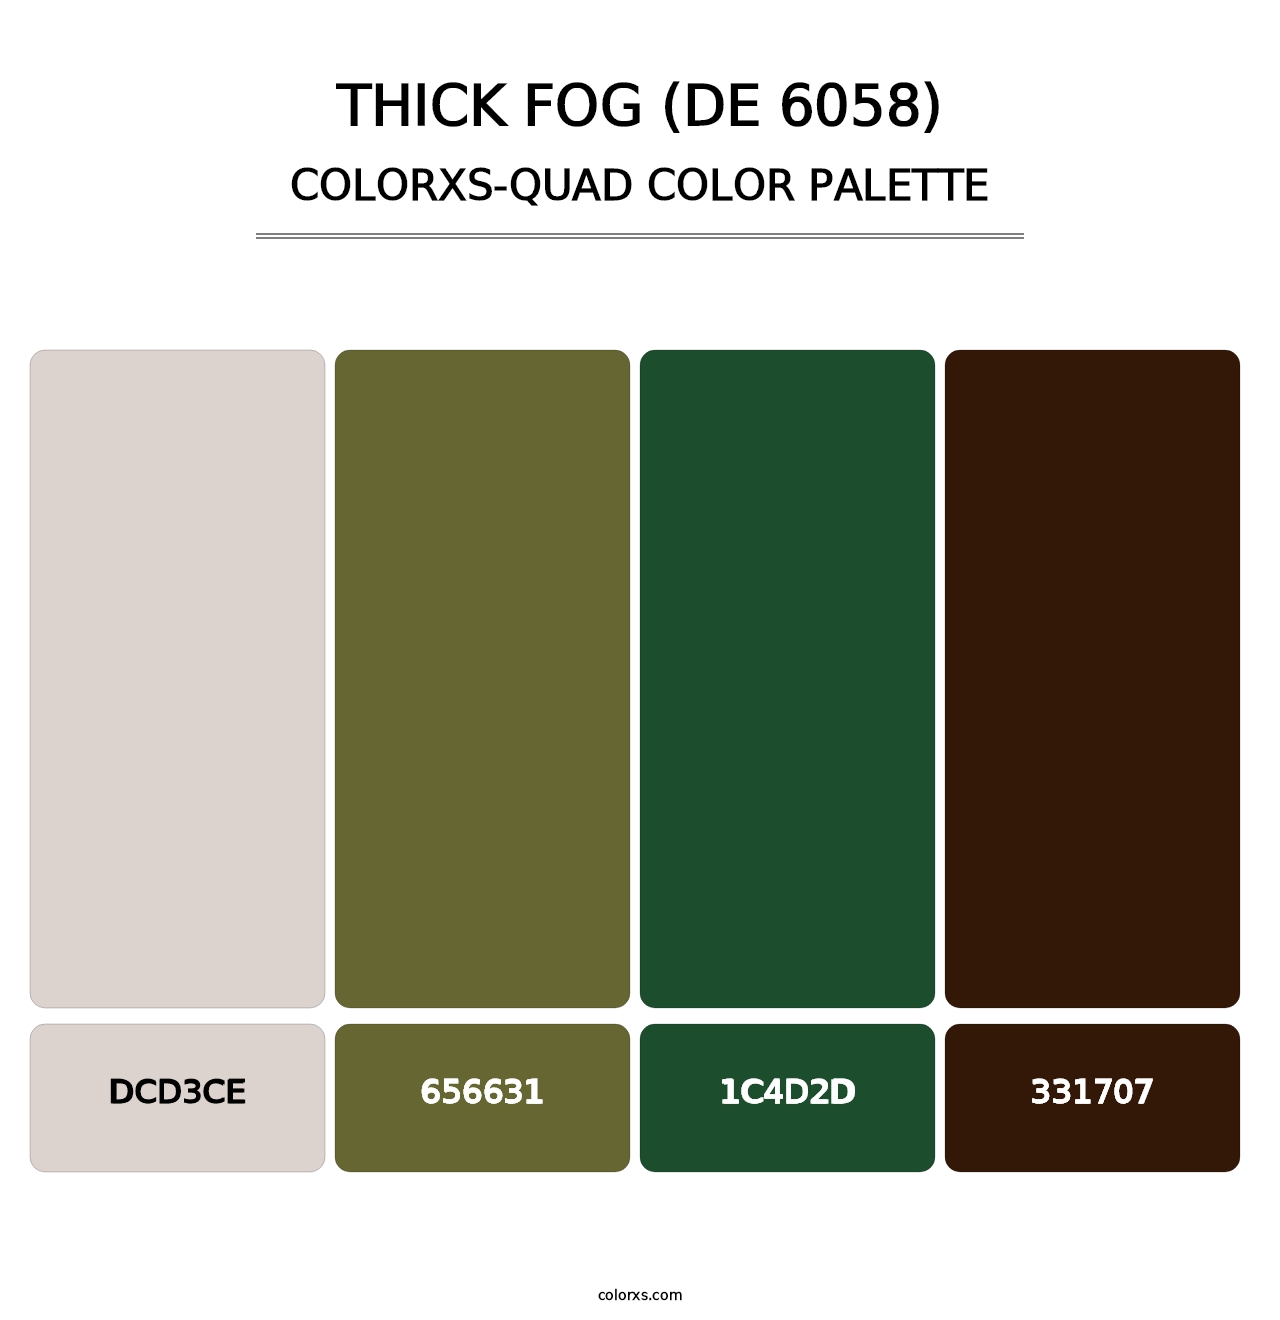 Thick Fog (DE 6058) - Colorxs Quad Palette